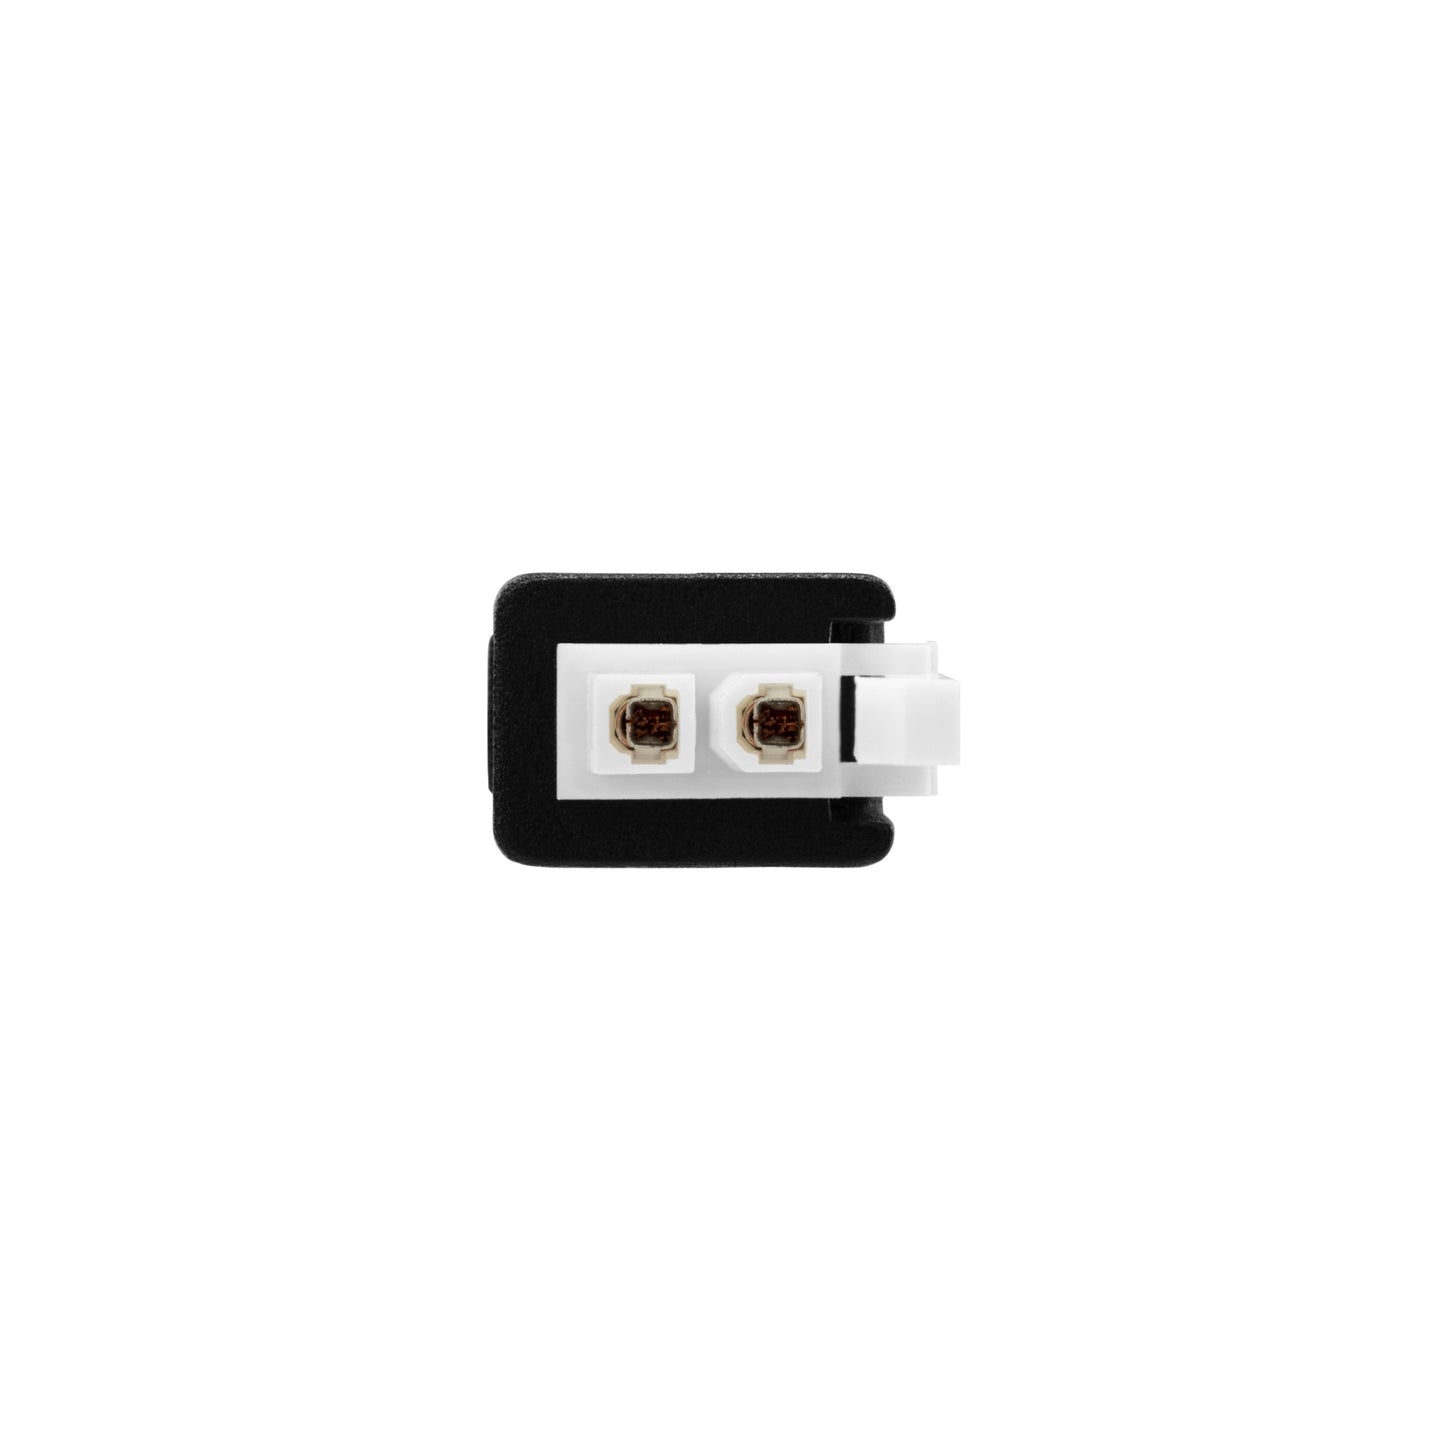 Molex Mini-Fit Jr 2-Pin output Plug.